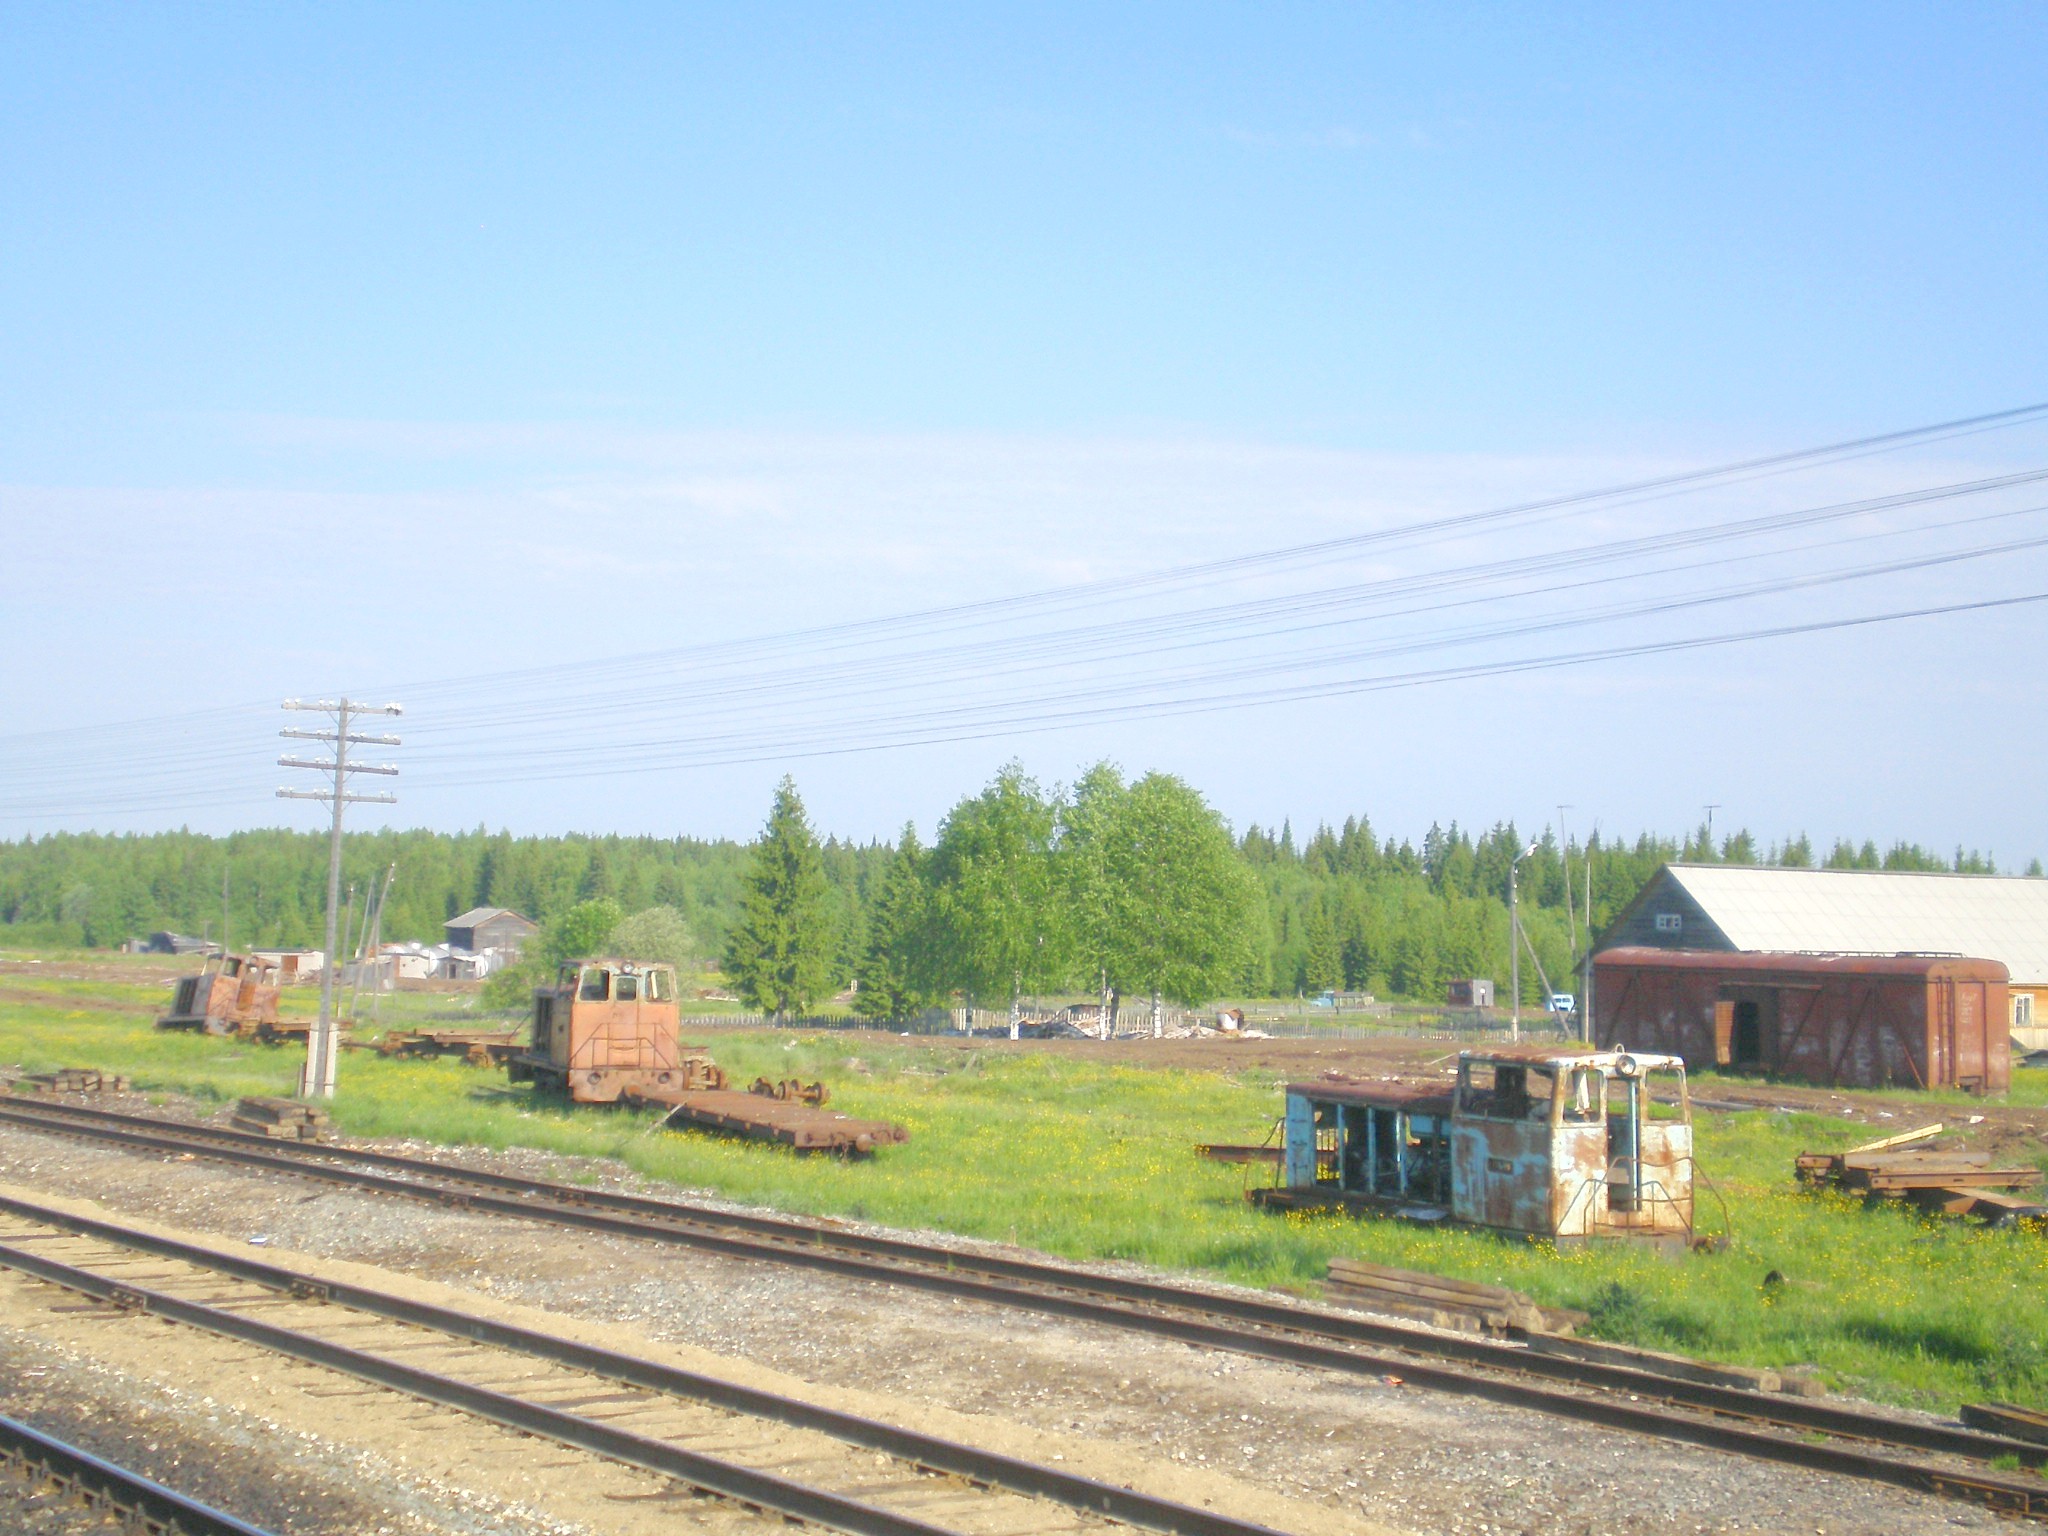 Узкоколейная железная дорога в Ломоватке  — фотографии, сделанные в 2008 году (часть 2)